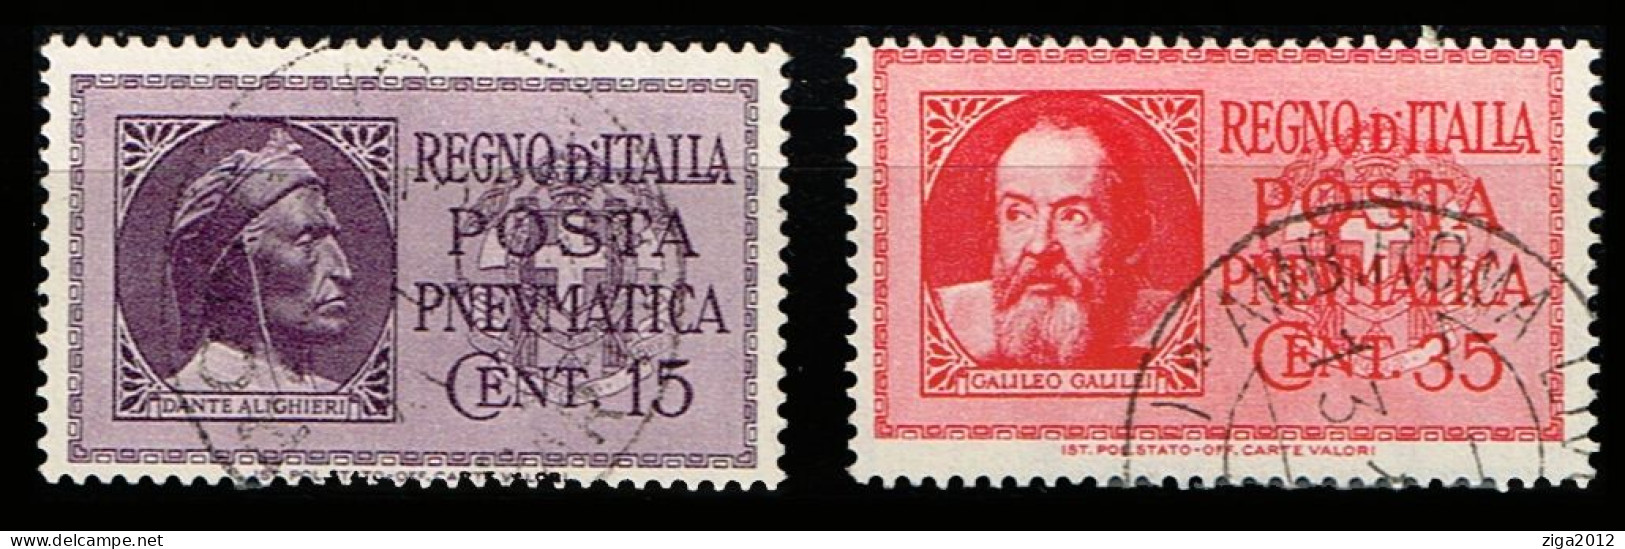 ITALY 1933 SERIE COMPLETA DEI FRANCOBOLLI DI POSTA PNEUMATICA - ANNULLATI - Rohrpost